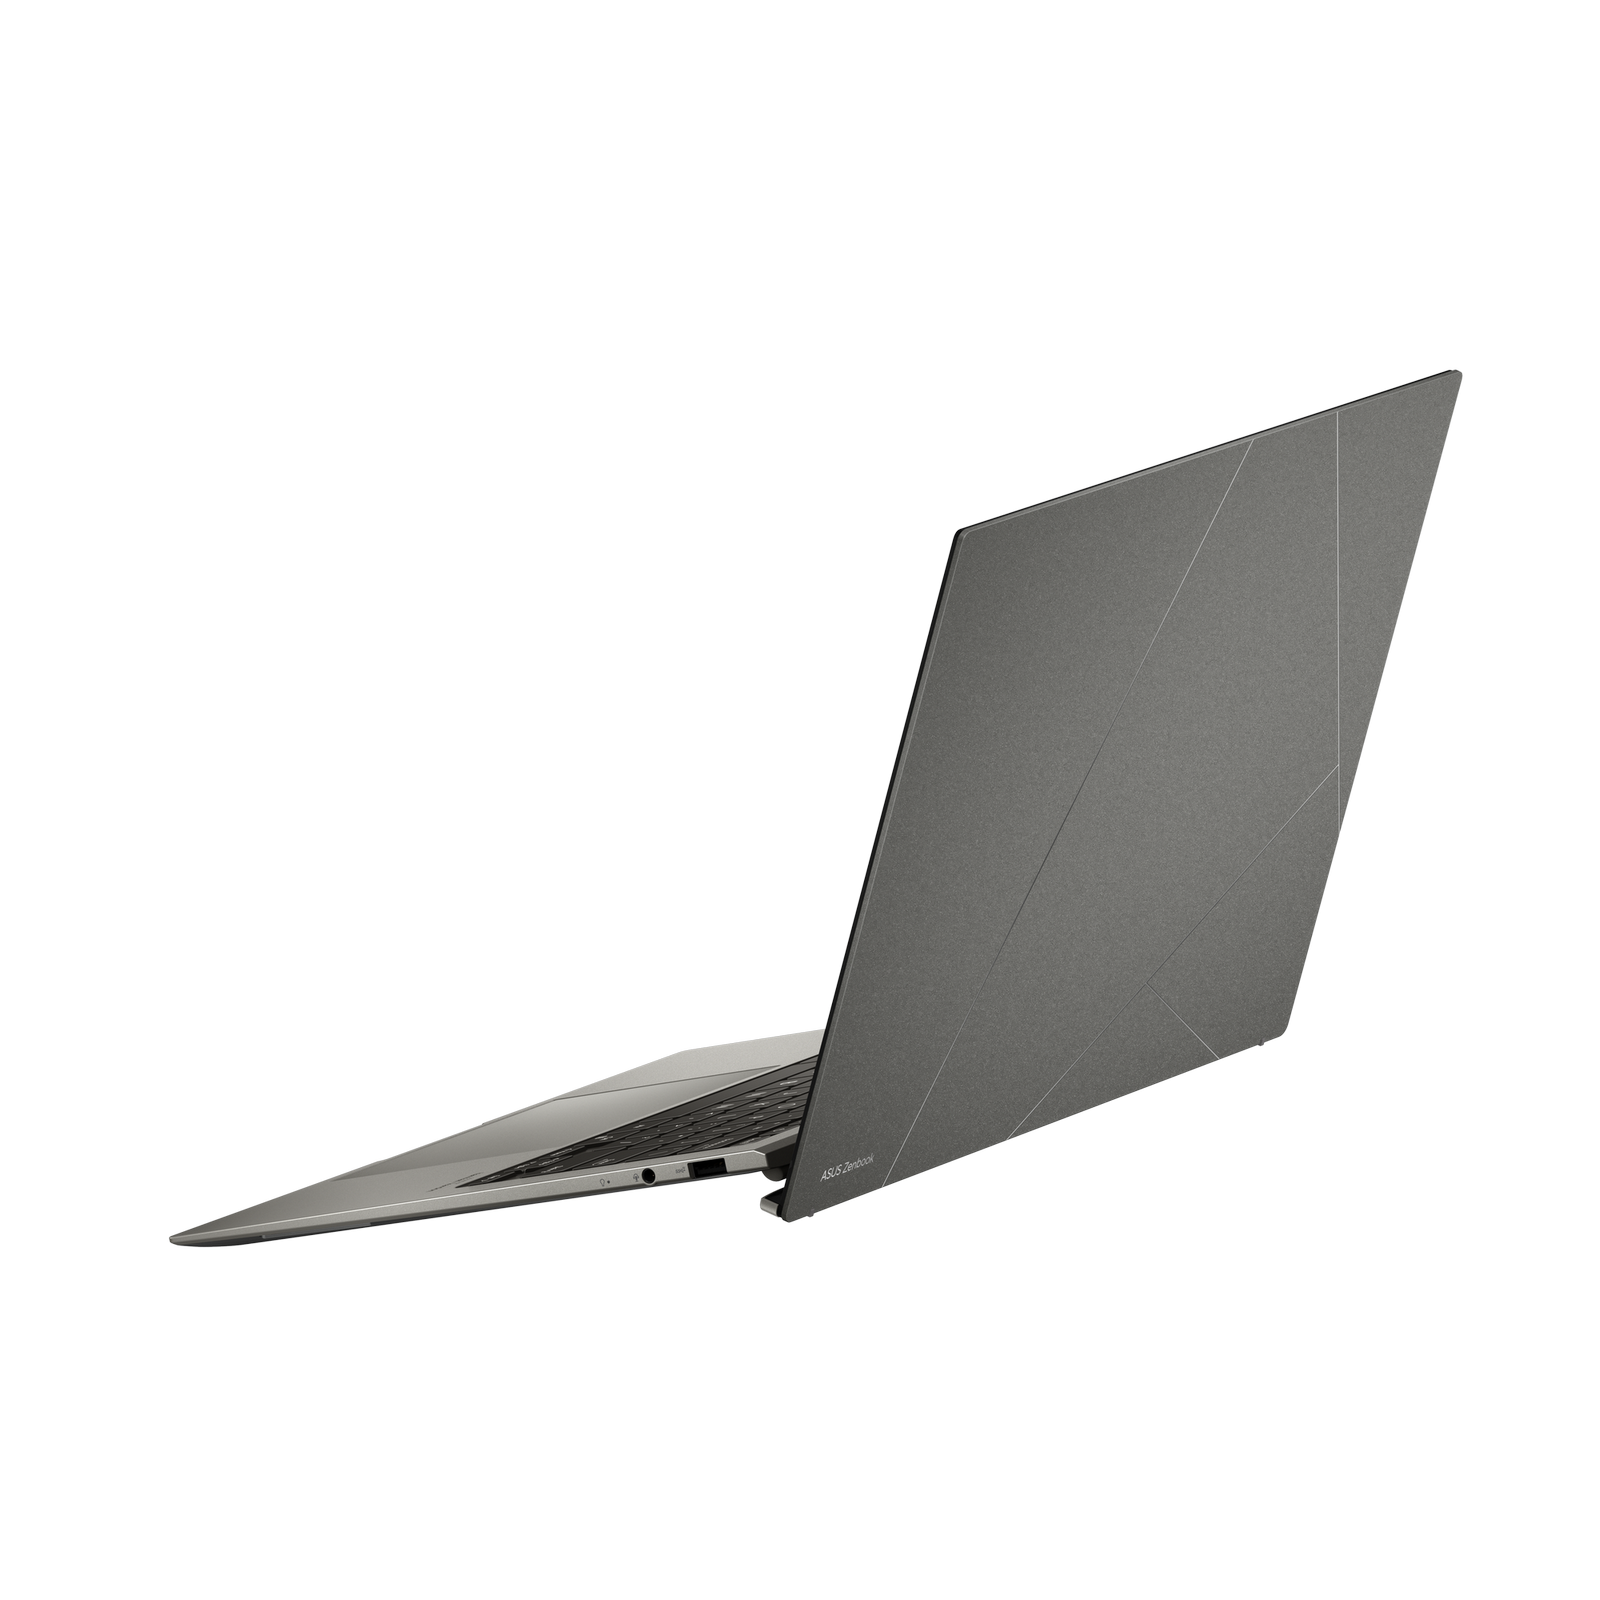 Zenbook S 13 OLED UX5304 Basalt Gray Basic 02